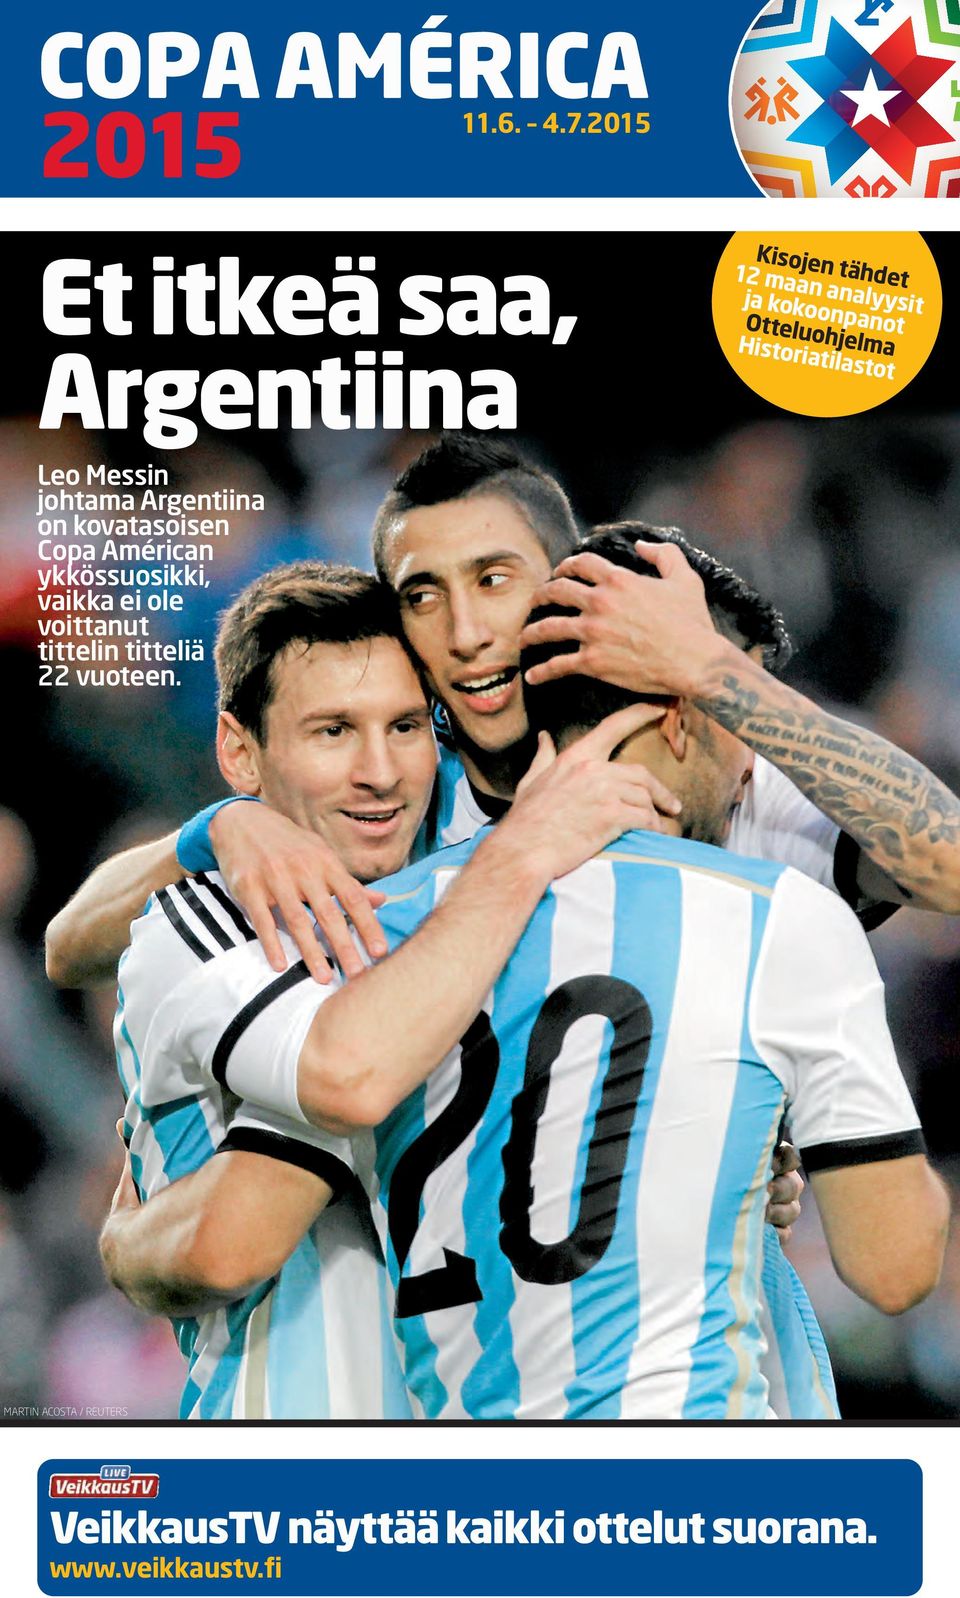 Otteluohjelma Historiatilastot Leo Messin johtama Argentiina on kovatasoisen Copa